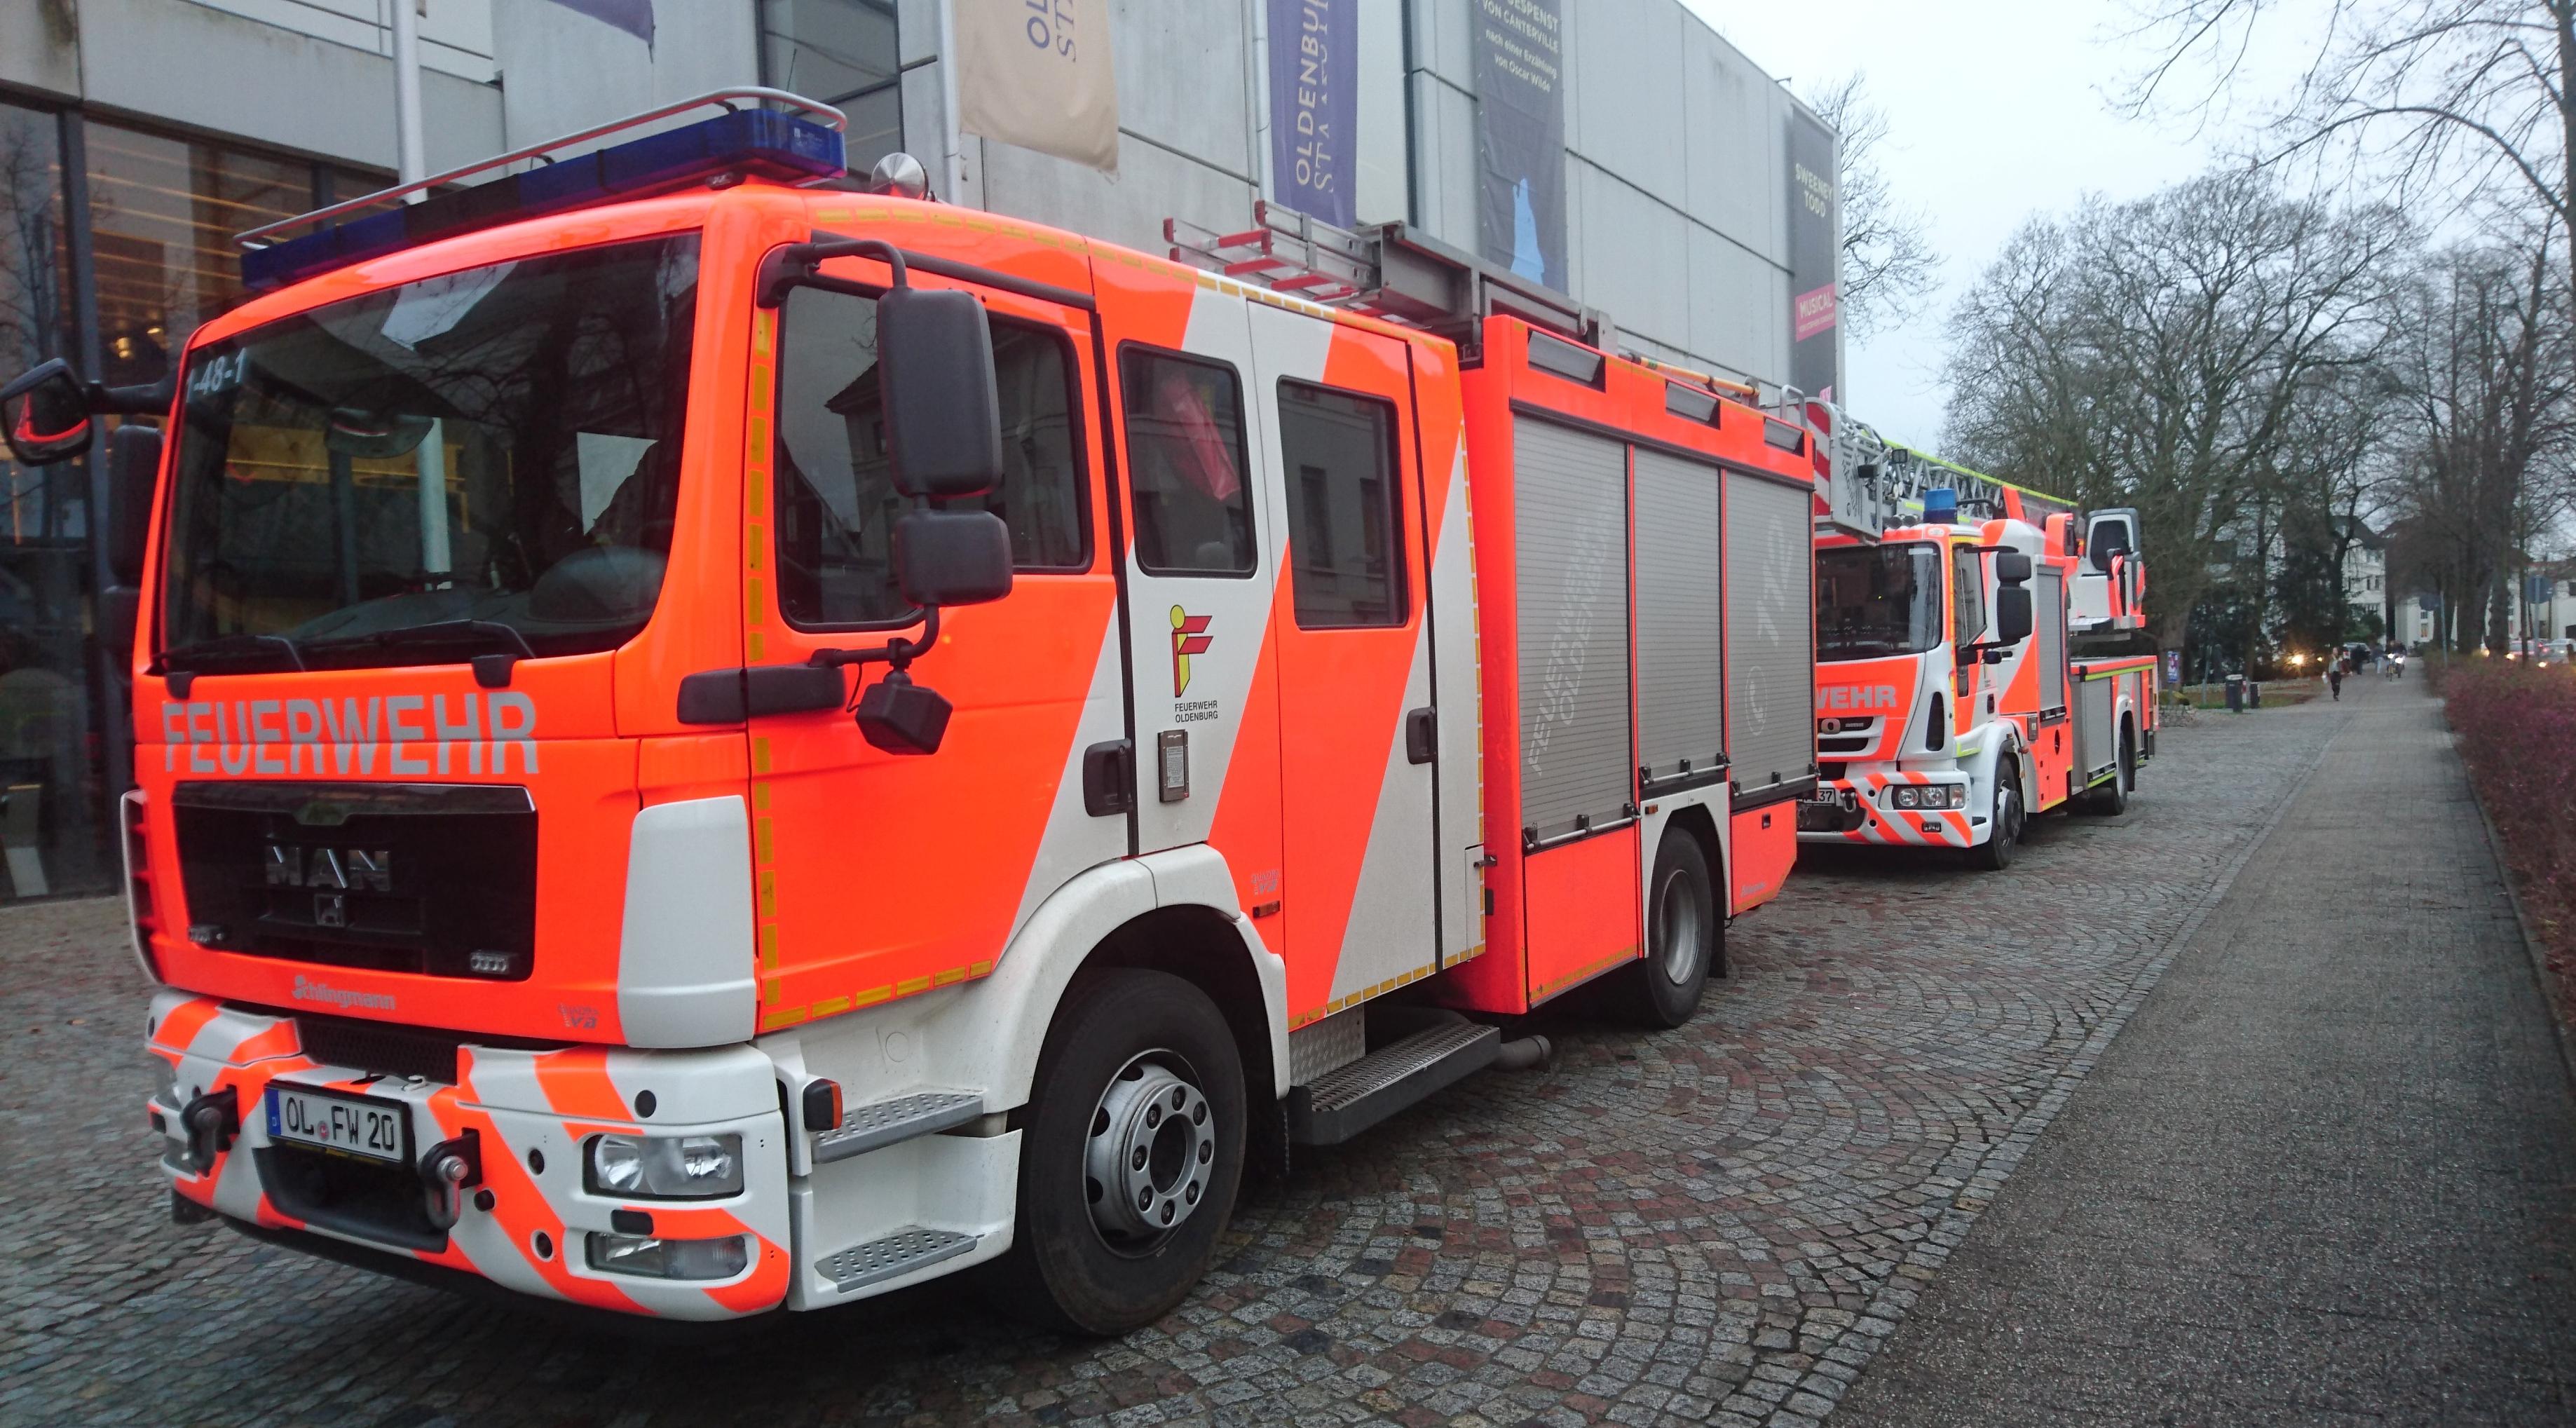 Geldschieter Misverstand Zware vrachtwagen Duitse brandweer krijgt sirene niet uit | Buitenland | Telegraaf.nl